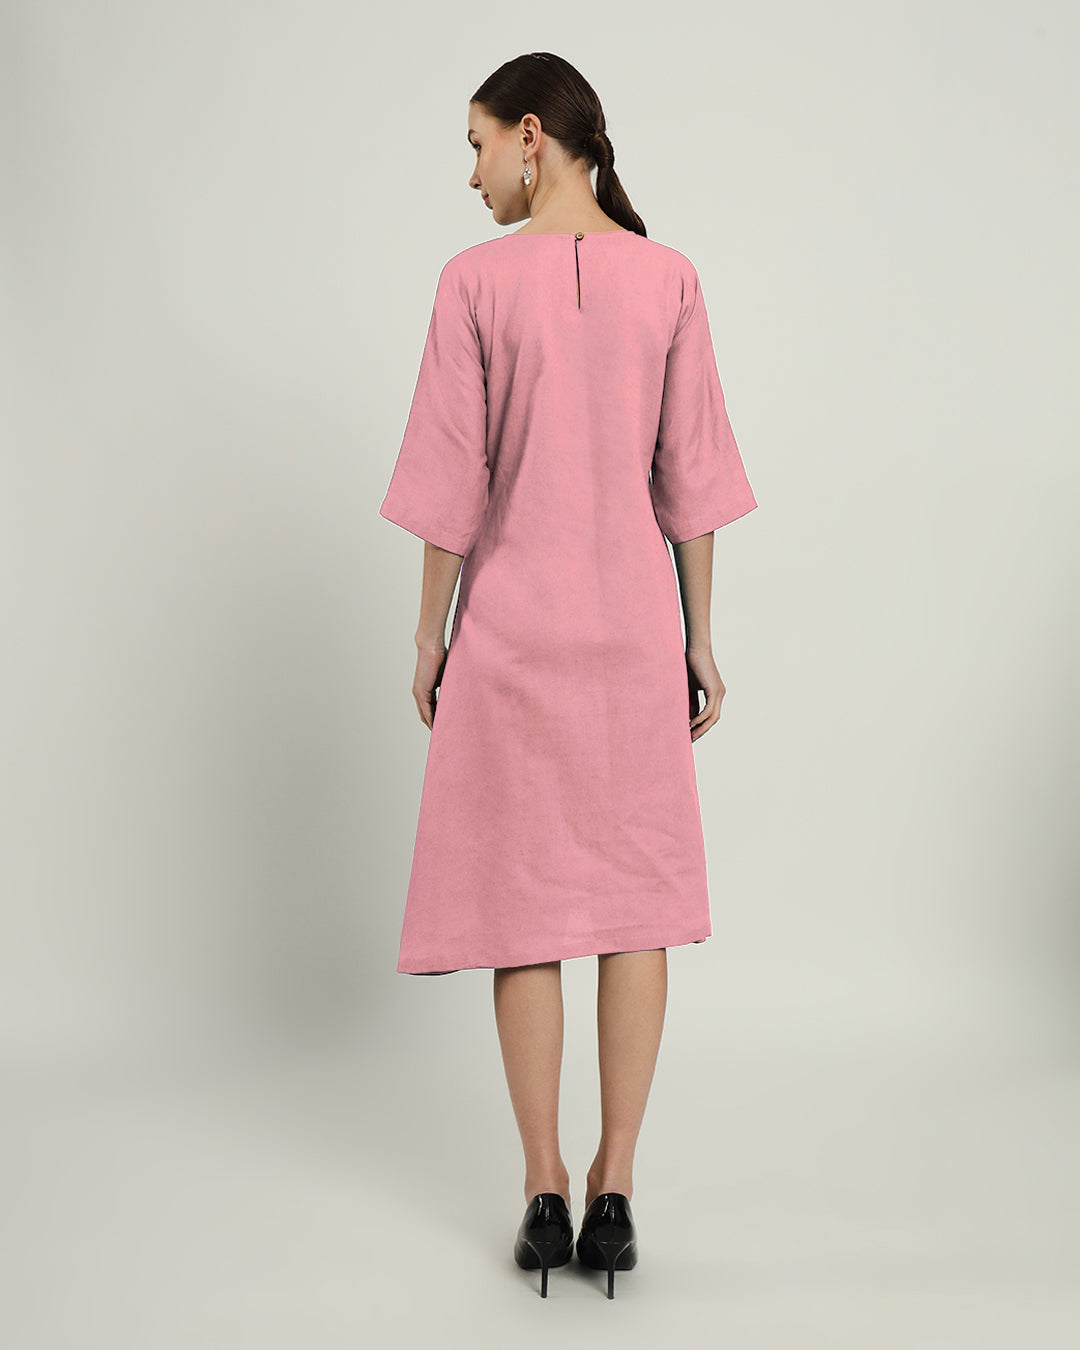 The Monrovia Fondant Pink Cotton Dress